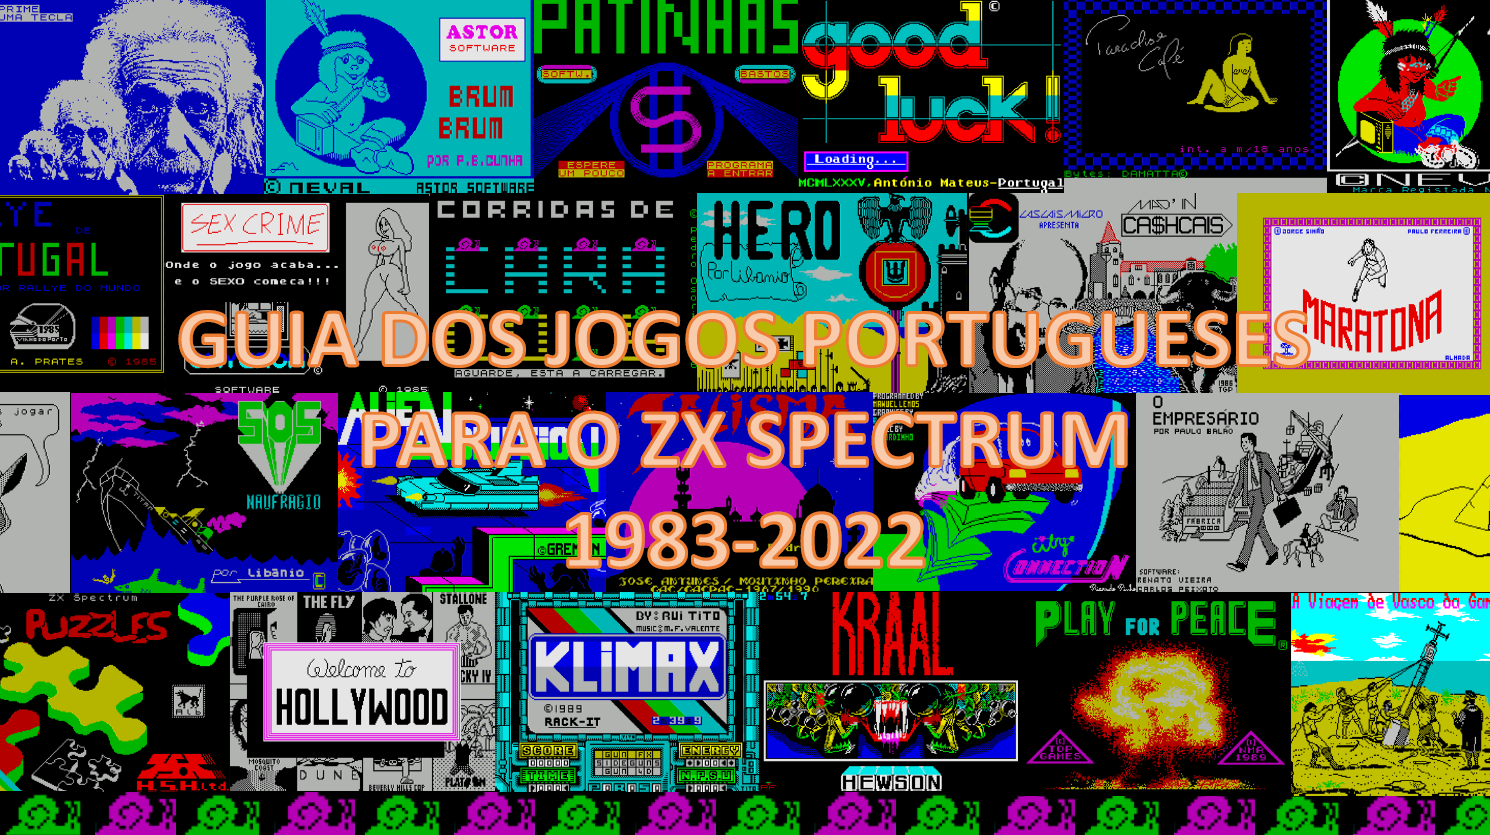 Aveiro e Cultura: Nostalgia Spectrum - Jogos